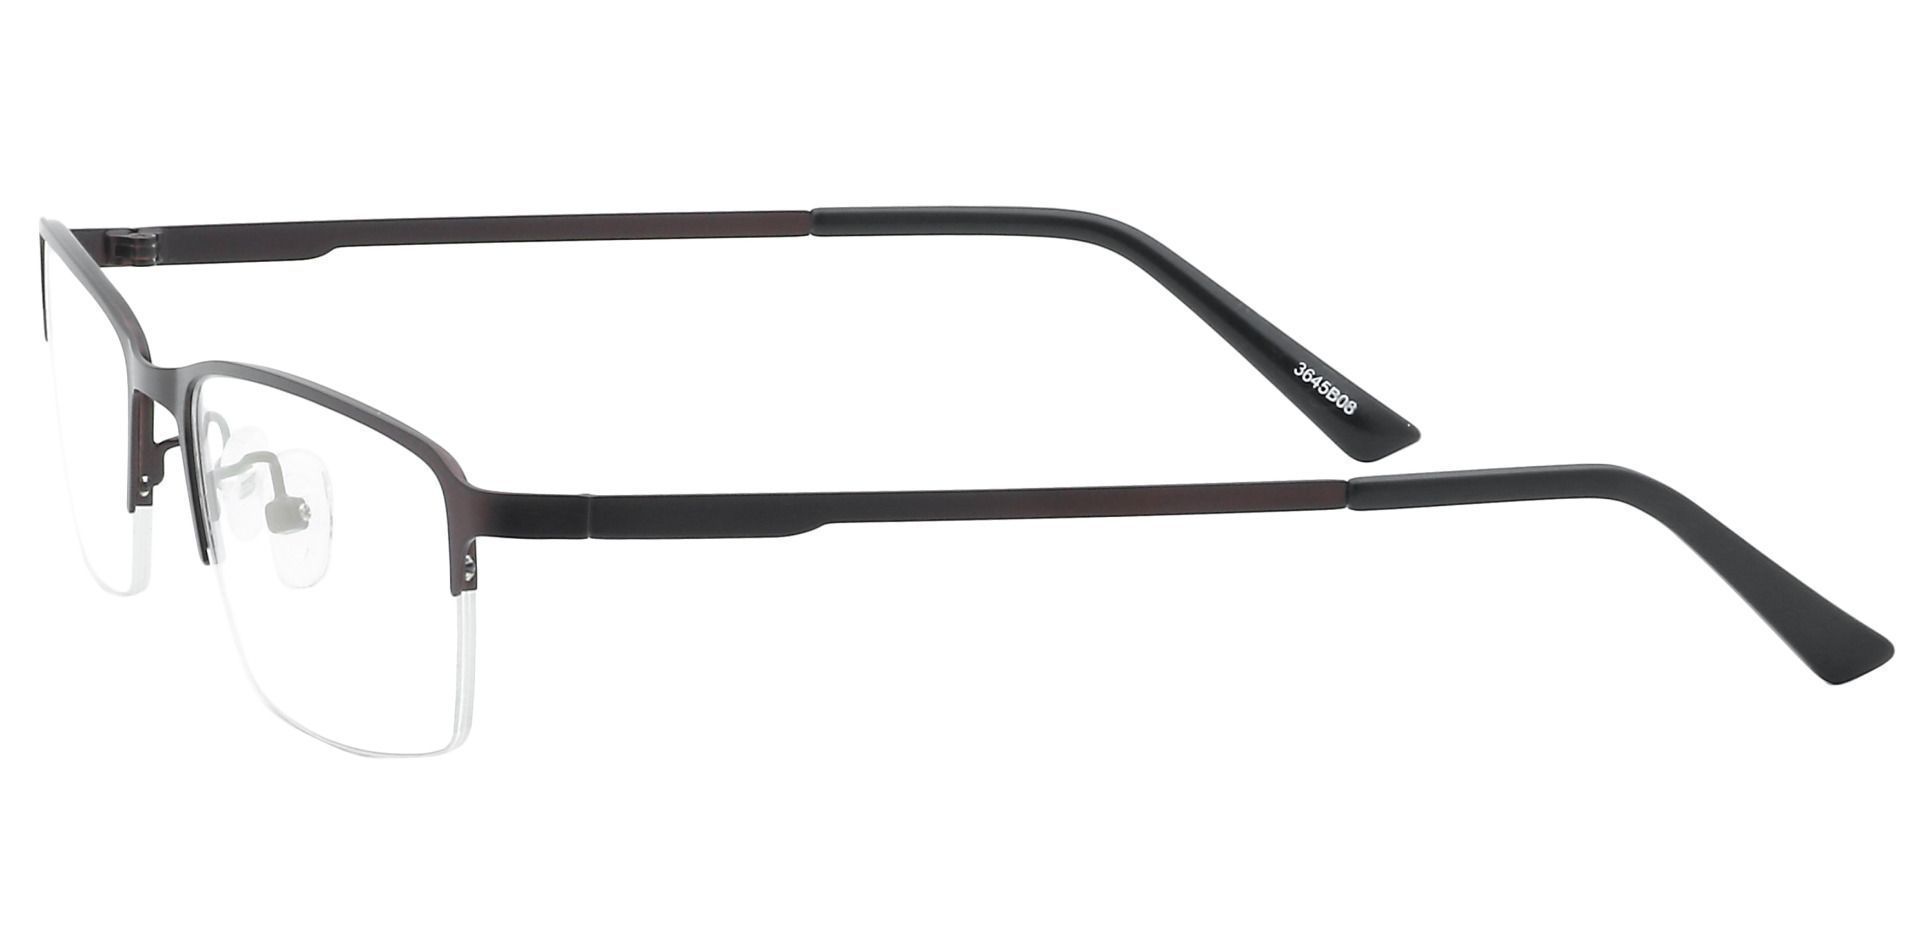 Bennett Rectangle Lined Bifocal Glasses - Brown